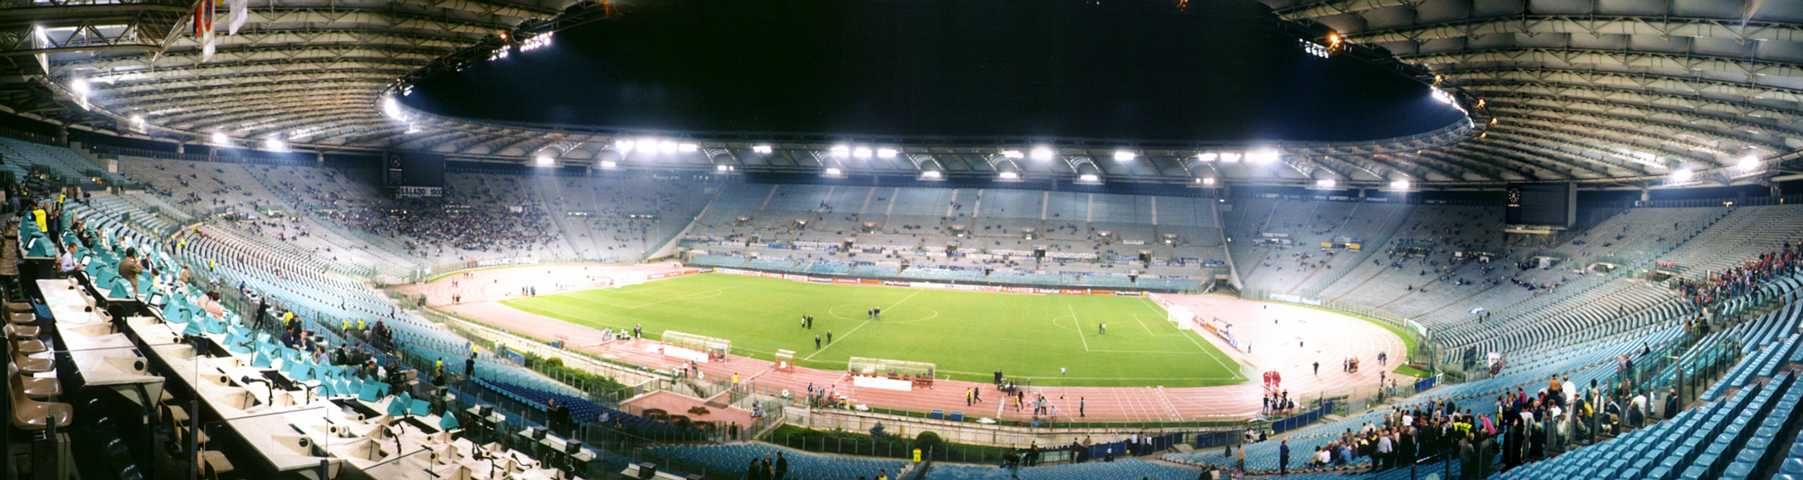 Stadio Olimpico w Rzymie